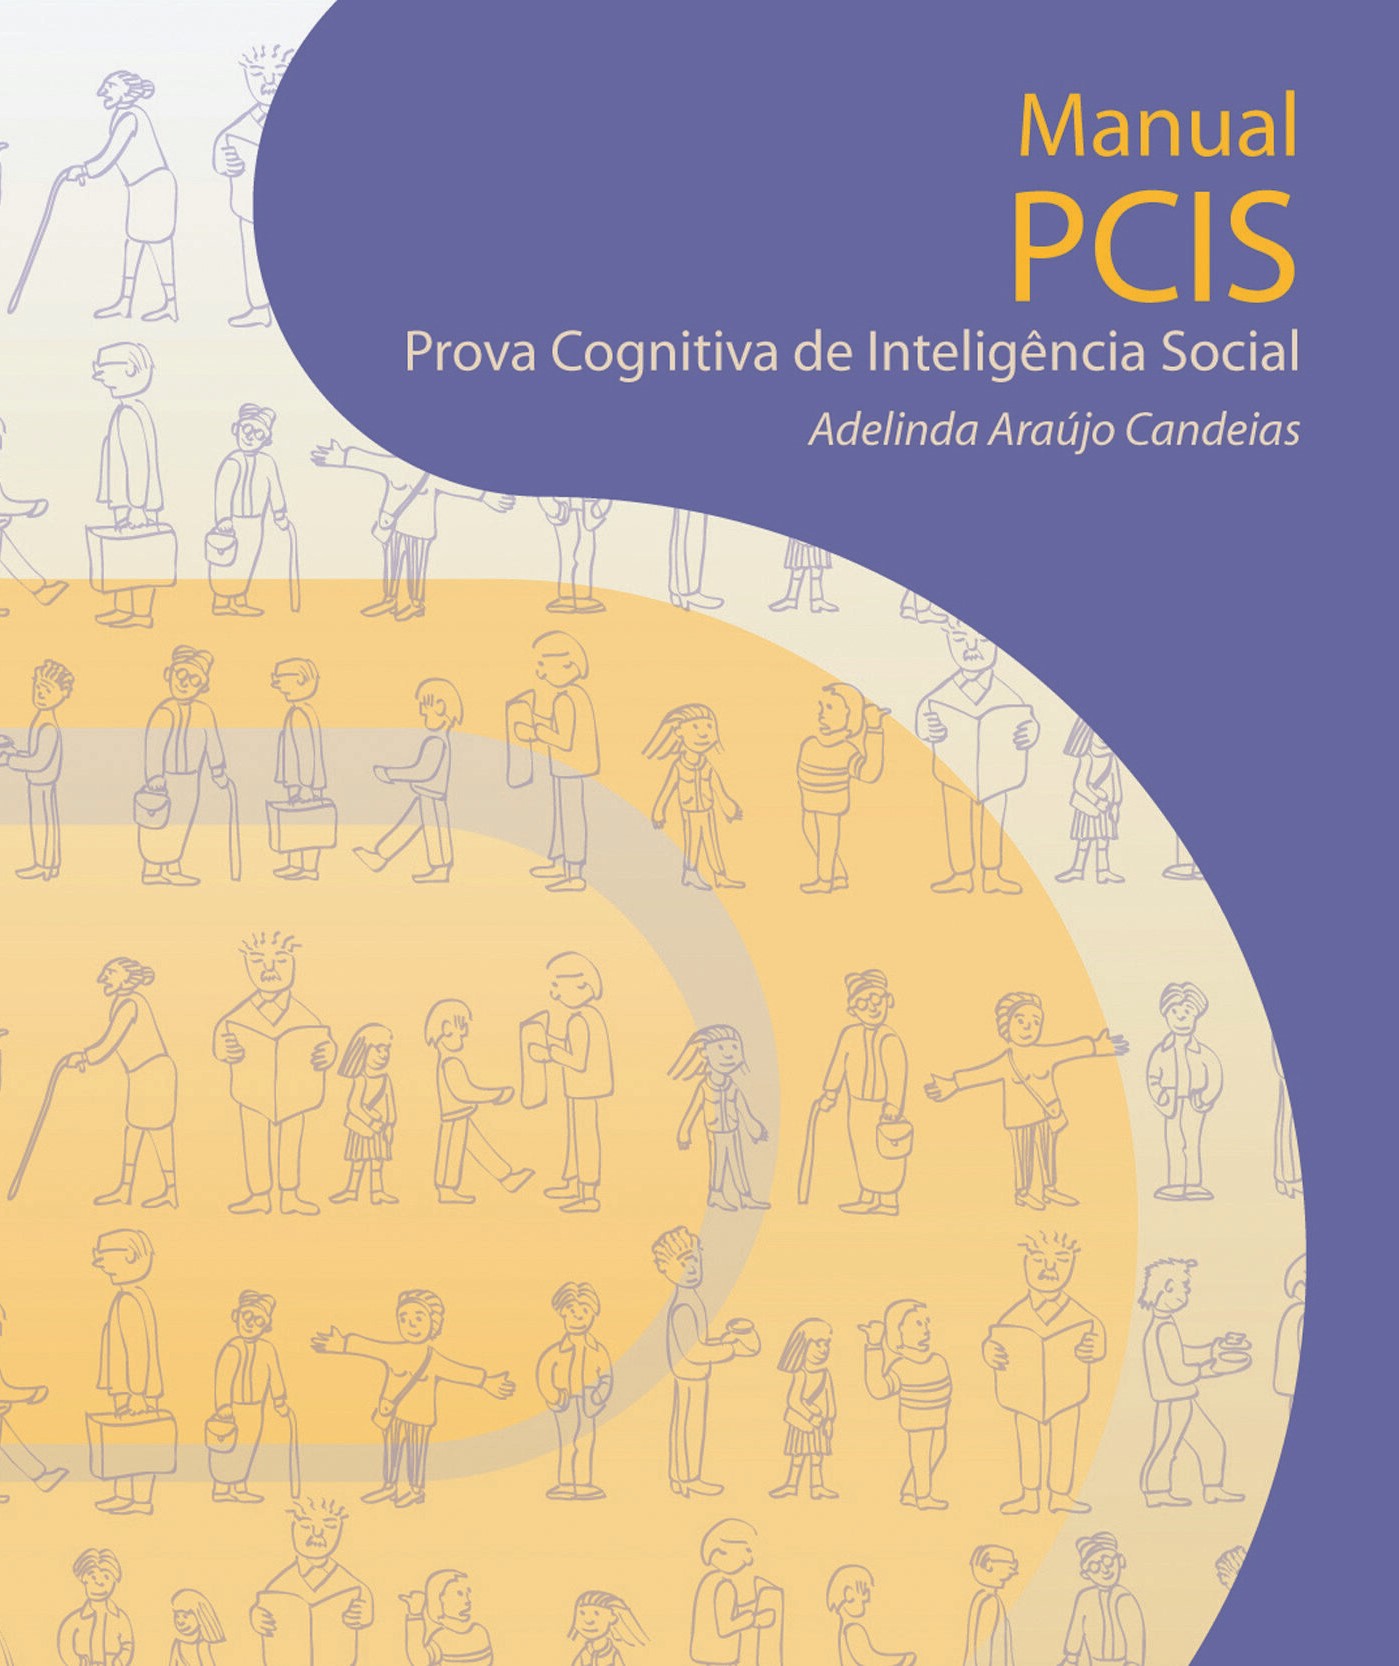 PCIS – Prova Cognitiva de Inteligência Social